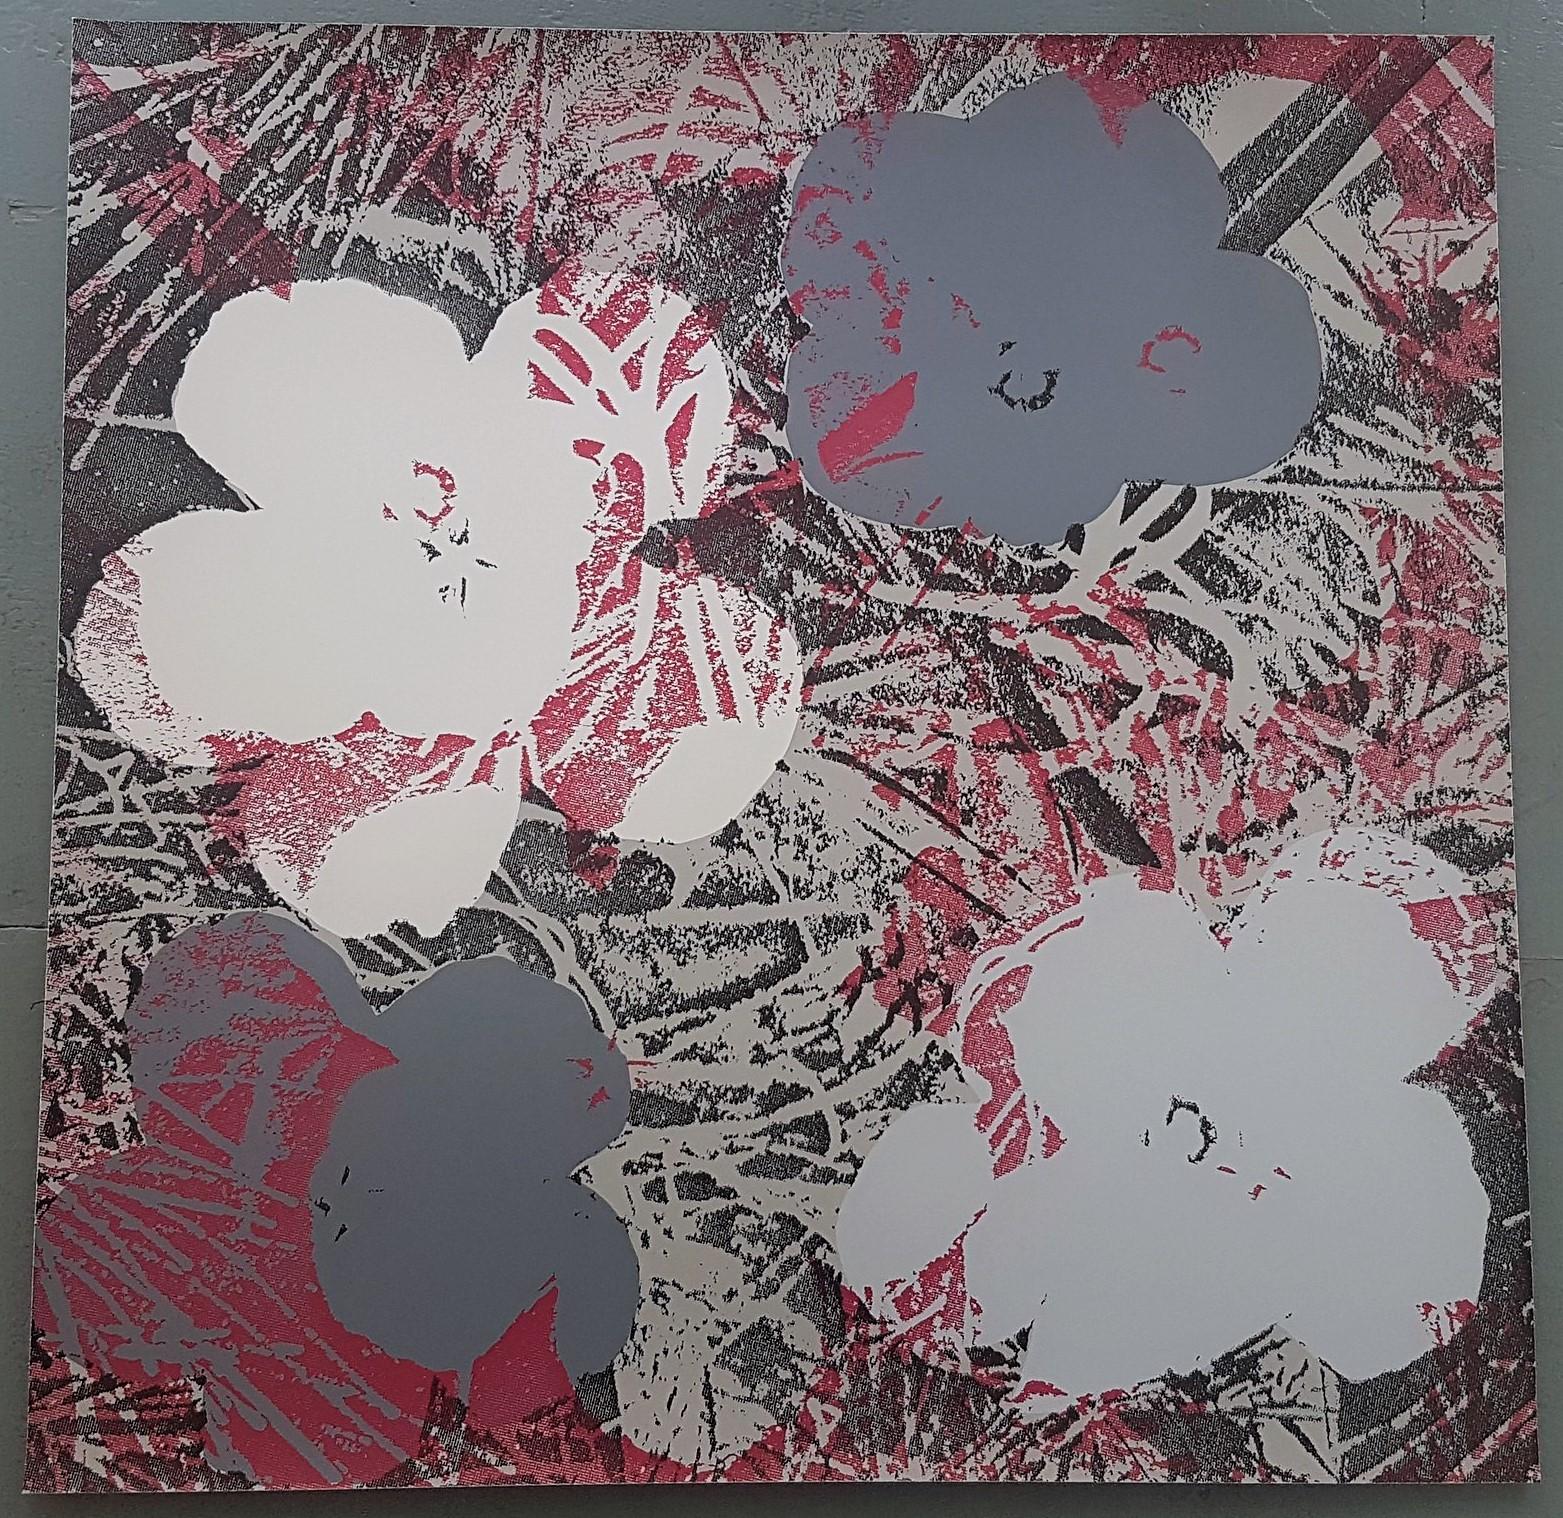 Blumen (Graue und dunkelrote Farbtöne – Pop Art) (50% OFF-LIST-Preis, SCHLUSSVERKAUFSVERKAUFSVERKAUF) – Print von Jurgen Kuhl 